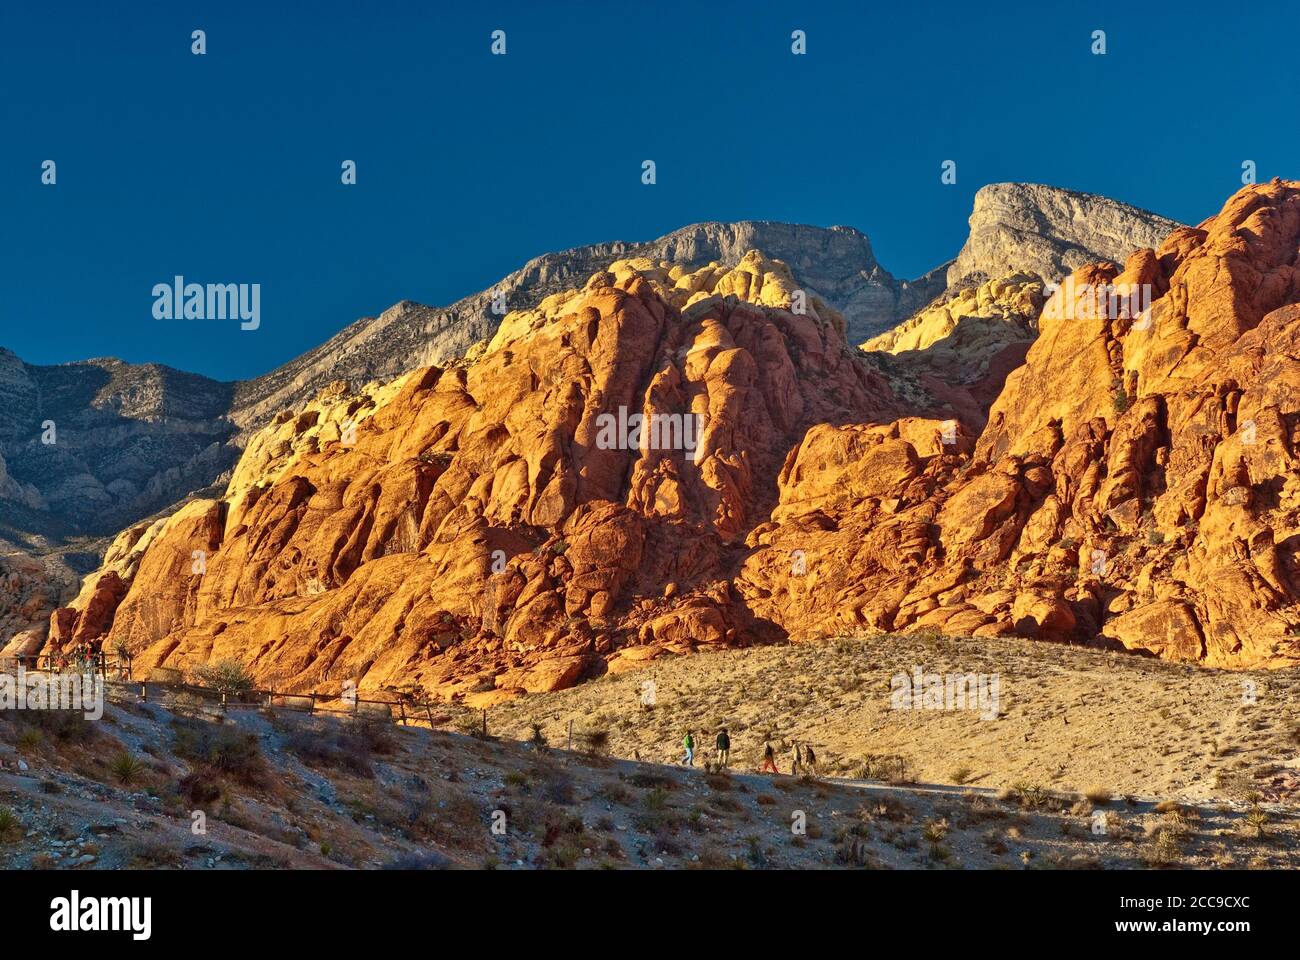 Touristen an Sandsteinfelsen von Calico Hills, Sonnenuntergang, Red Rock Canyon Bereich in Mojave Wüste in der Nähe von Las Vegas, Nevada, USA Stockfoto